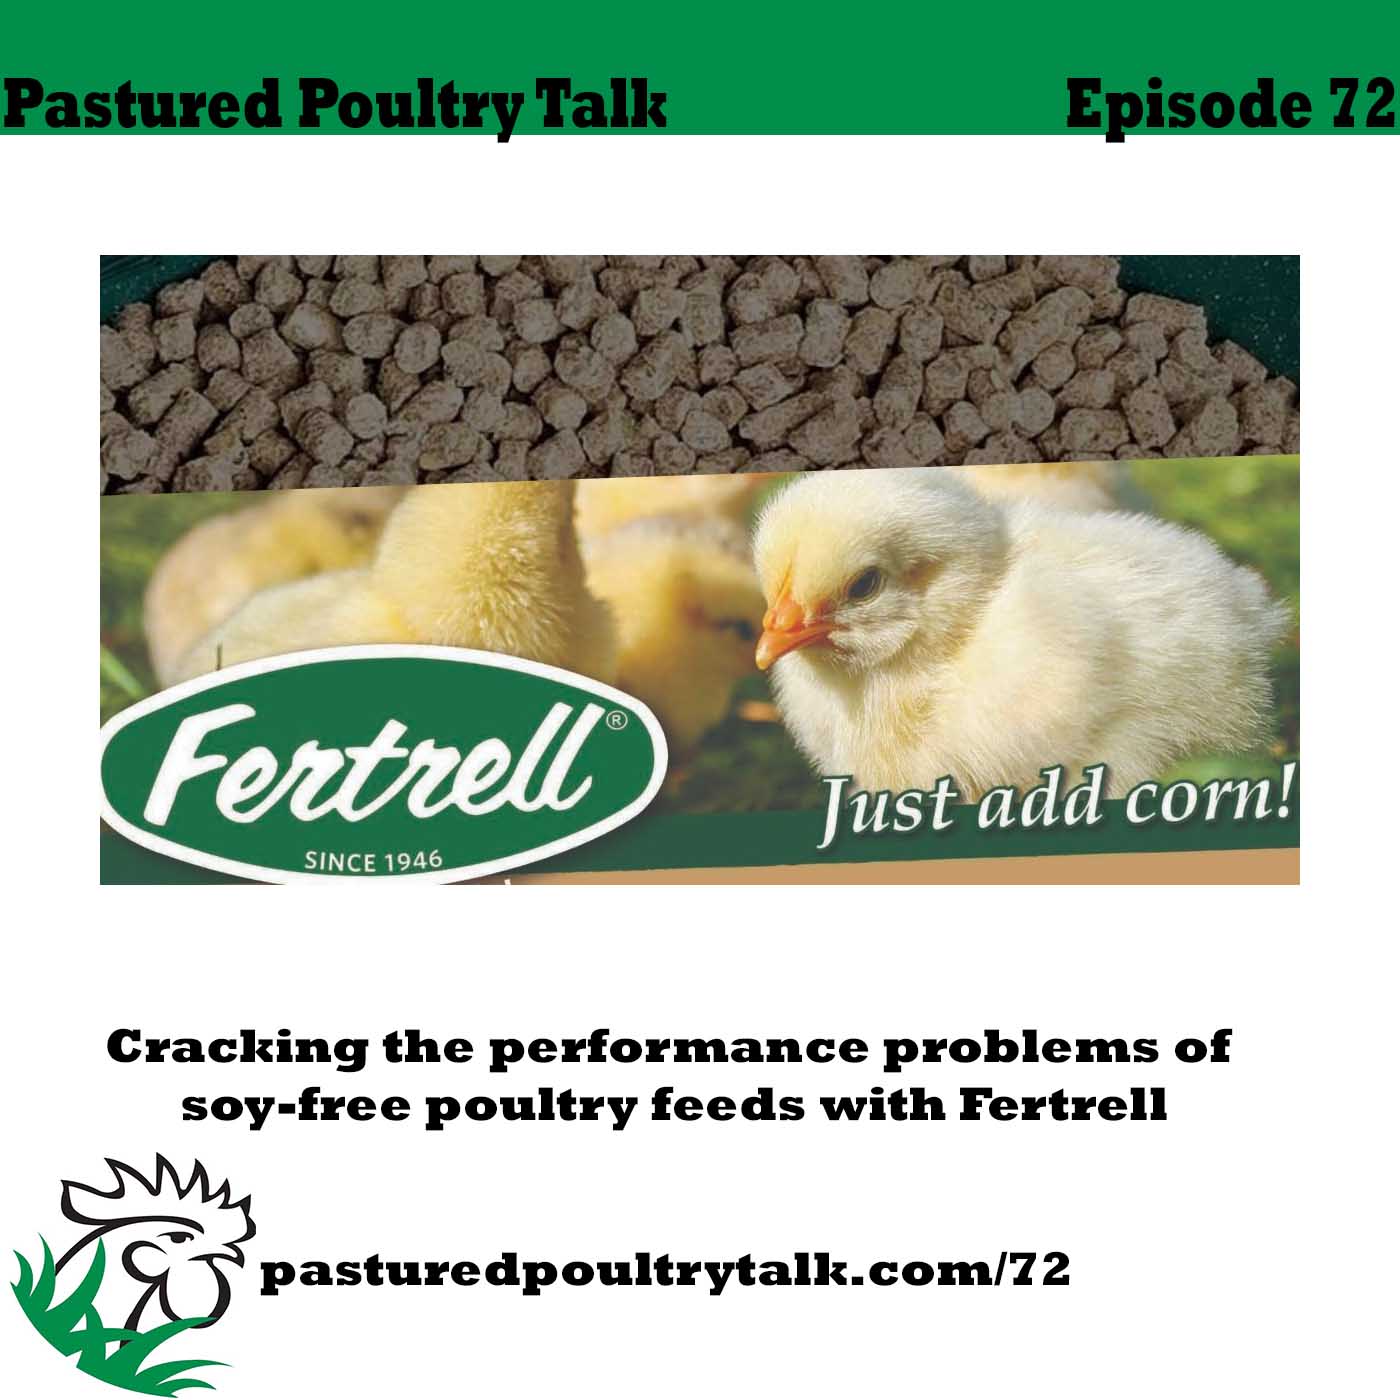 episode 72 artwork for Pastured Poultry Talk.